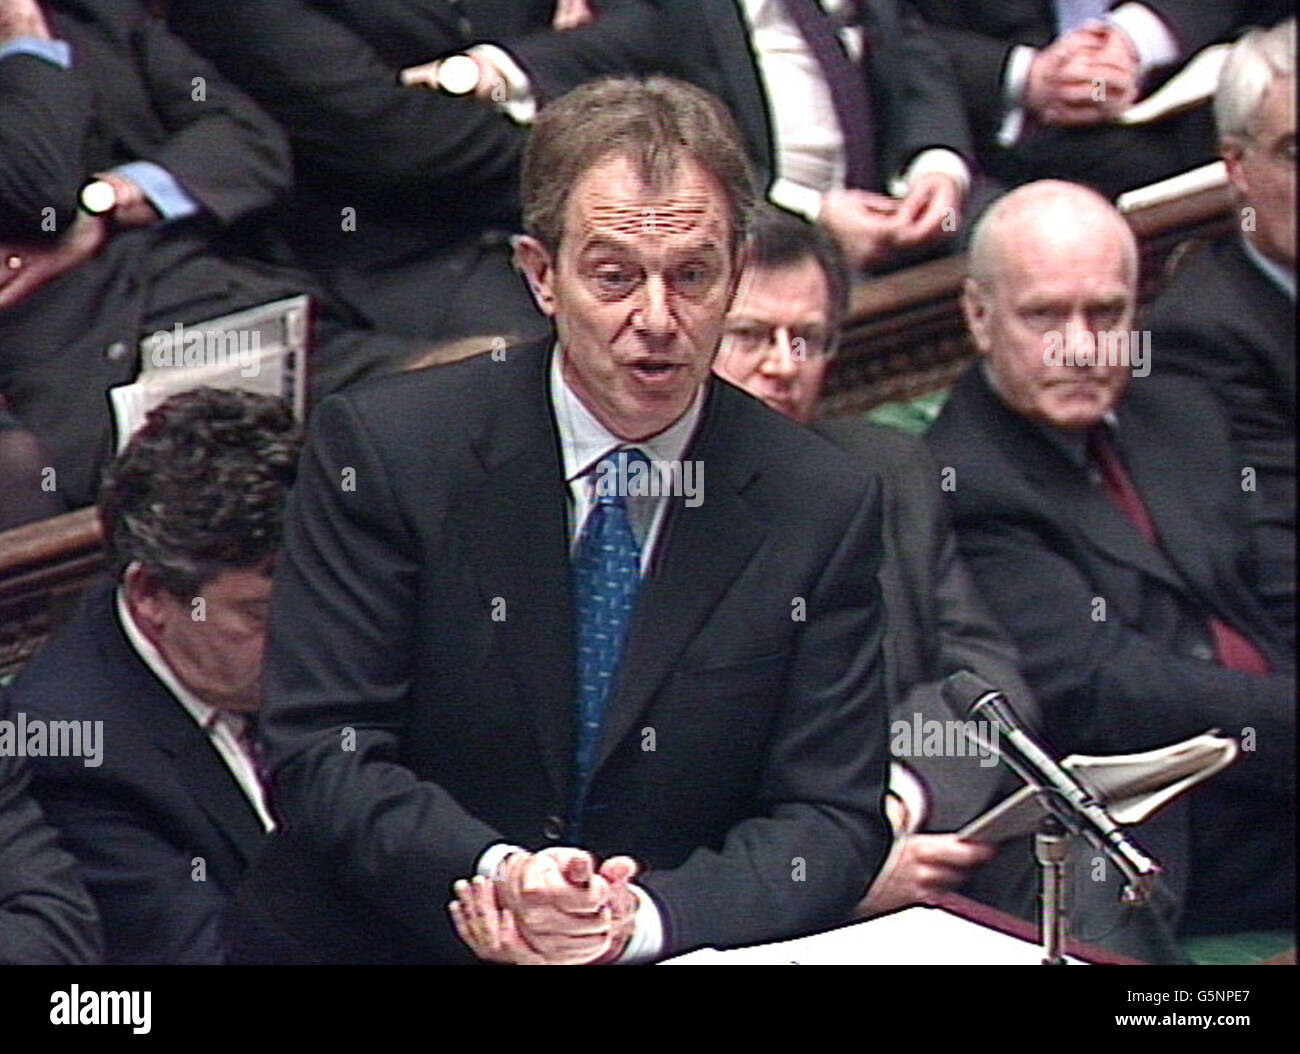 Capture d'écran du premier ministre Tony blair pendant les questions du premier ministre à la Chambre des communes, à Londres. Banque D'Images